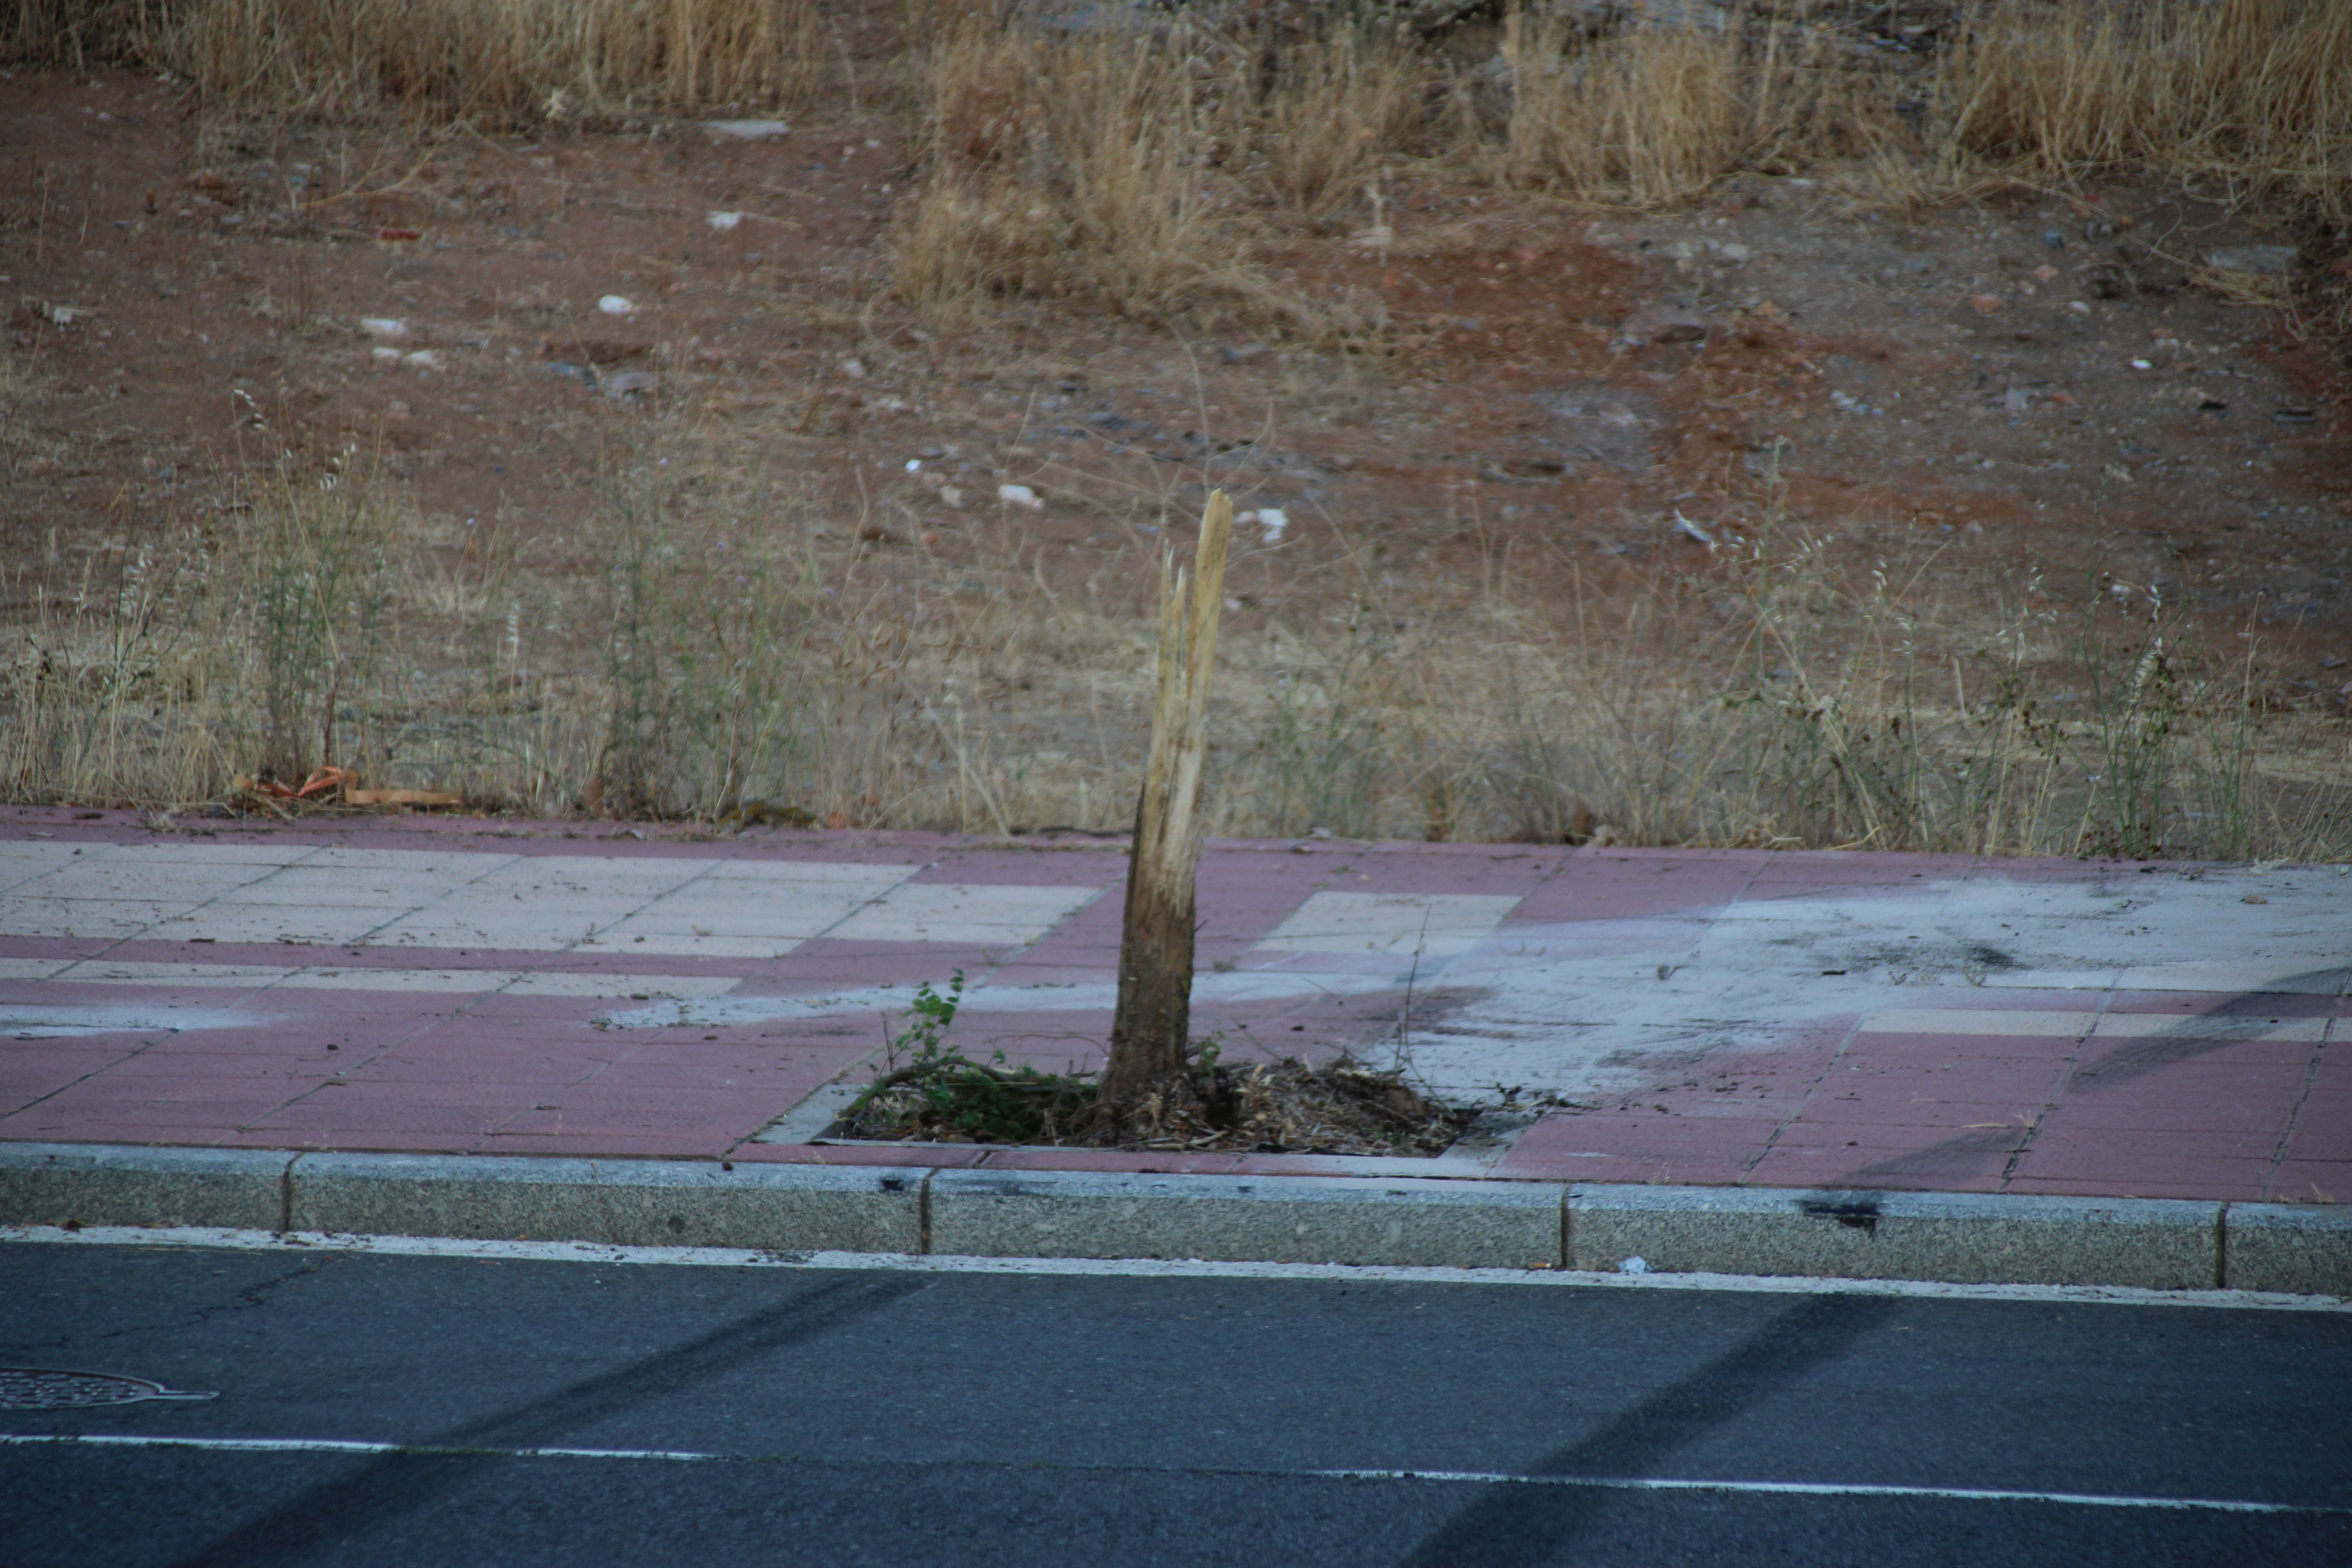 Arranca un árbol tras hacer ‘un recto’ en la calle Victoria al circular a gran velocidad y abandona su vehículo en el lugar (7)